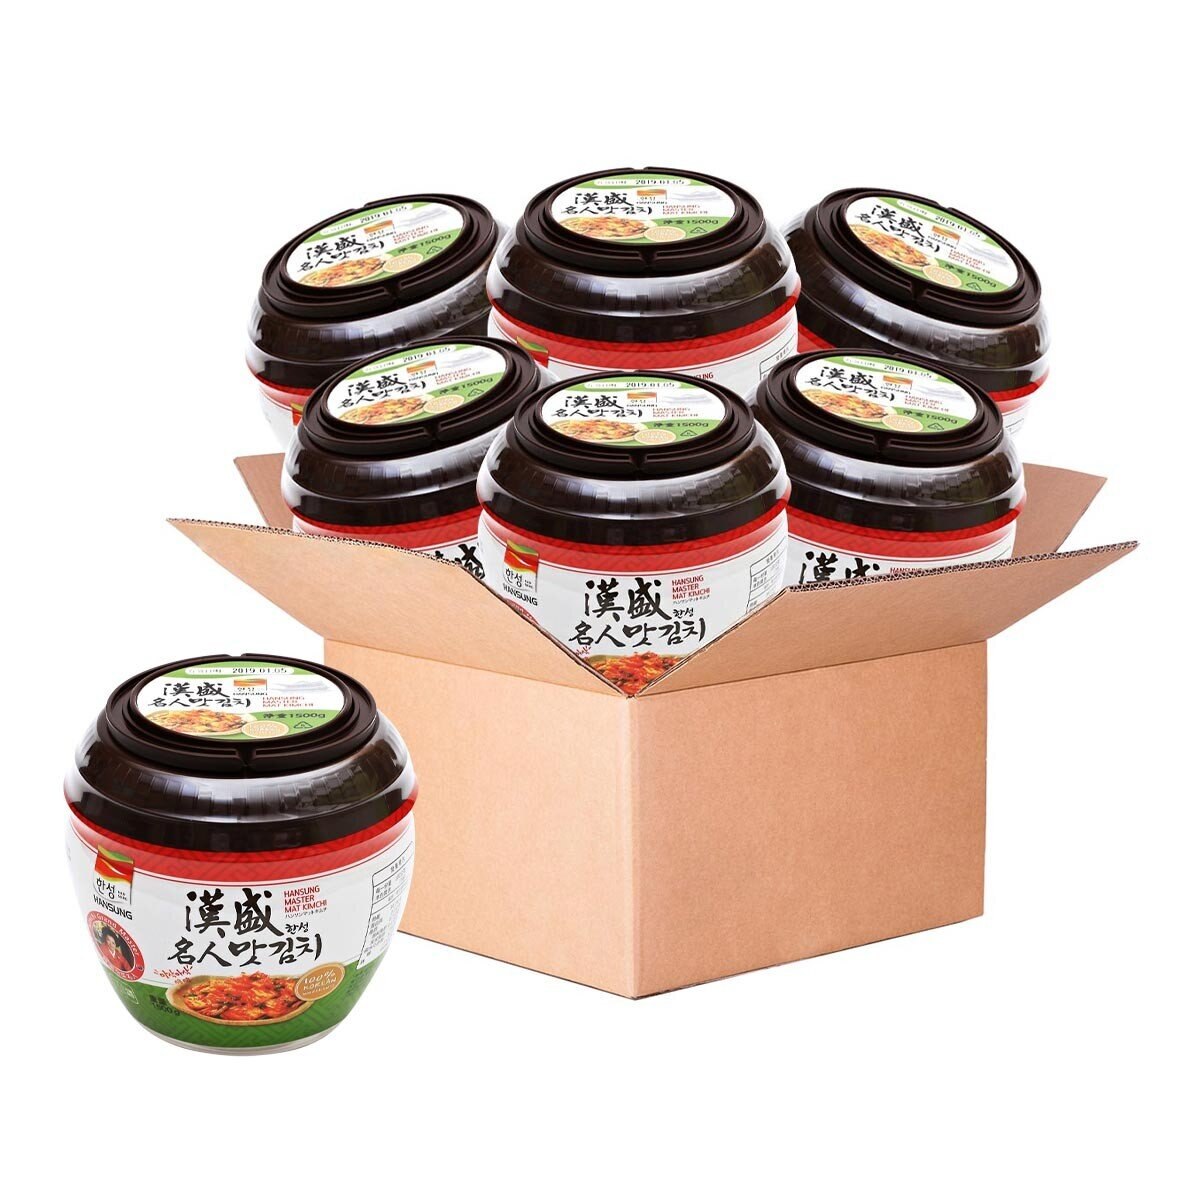 漢盛 泡菜切片罐裝 1.5公斤 X 6罐 僅配送至雙北市區域